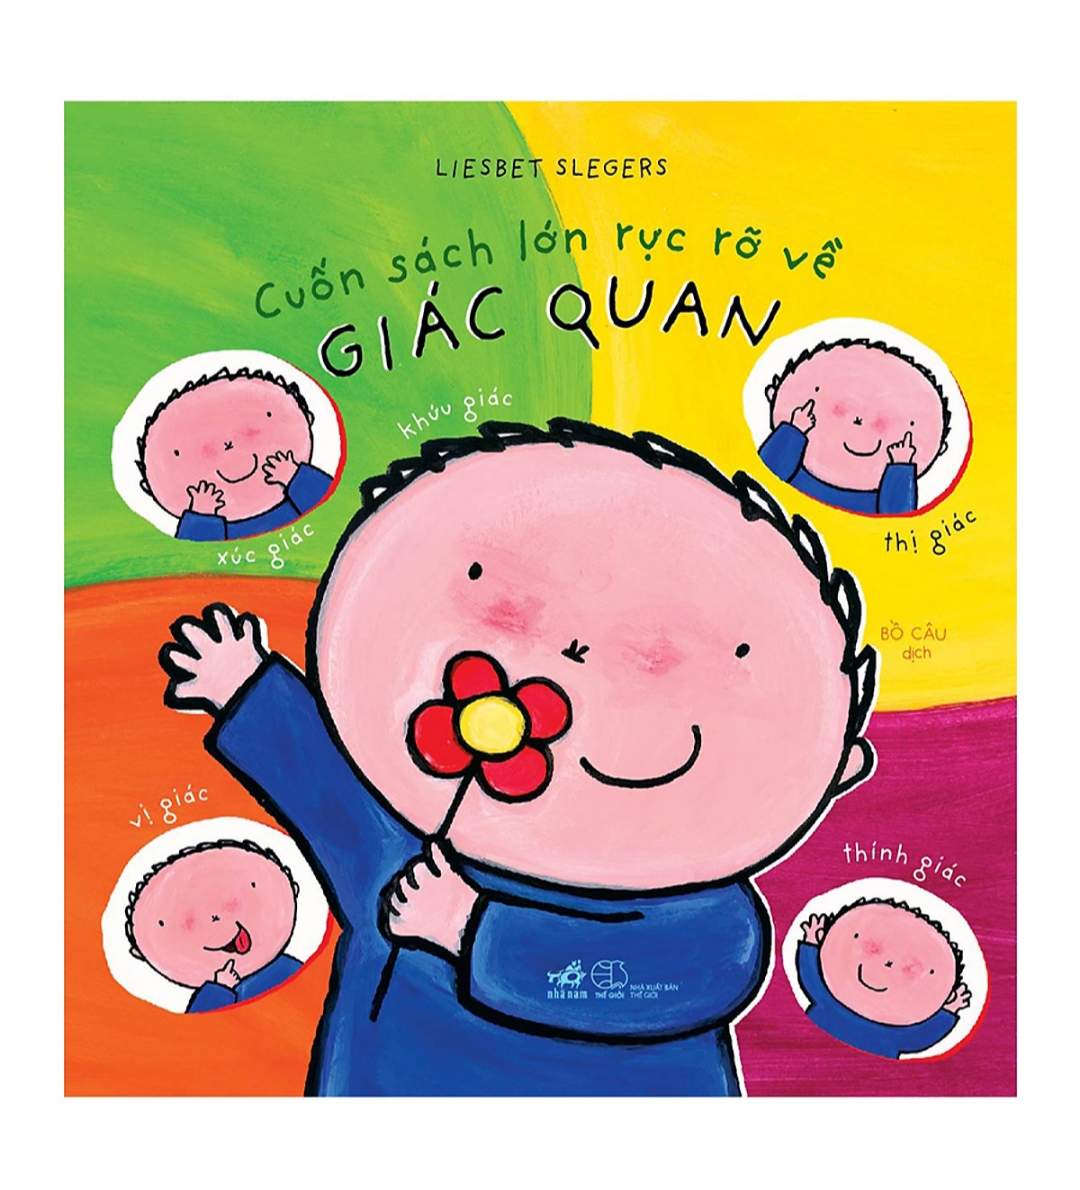 Combo Những Cuốn Sách Rực Rỡ : Loài Vật + Kỹ Năng + Bốn Mùa + Giác Quan + Poster 5 Ngón Tay ( Sách Phát triển trí tuệ / Tư duy logic dành cho bé 2-6 tuổi)